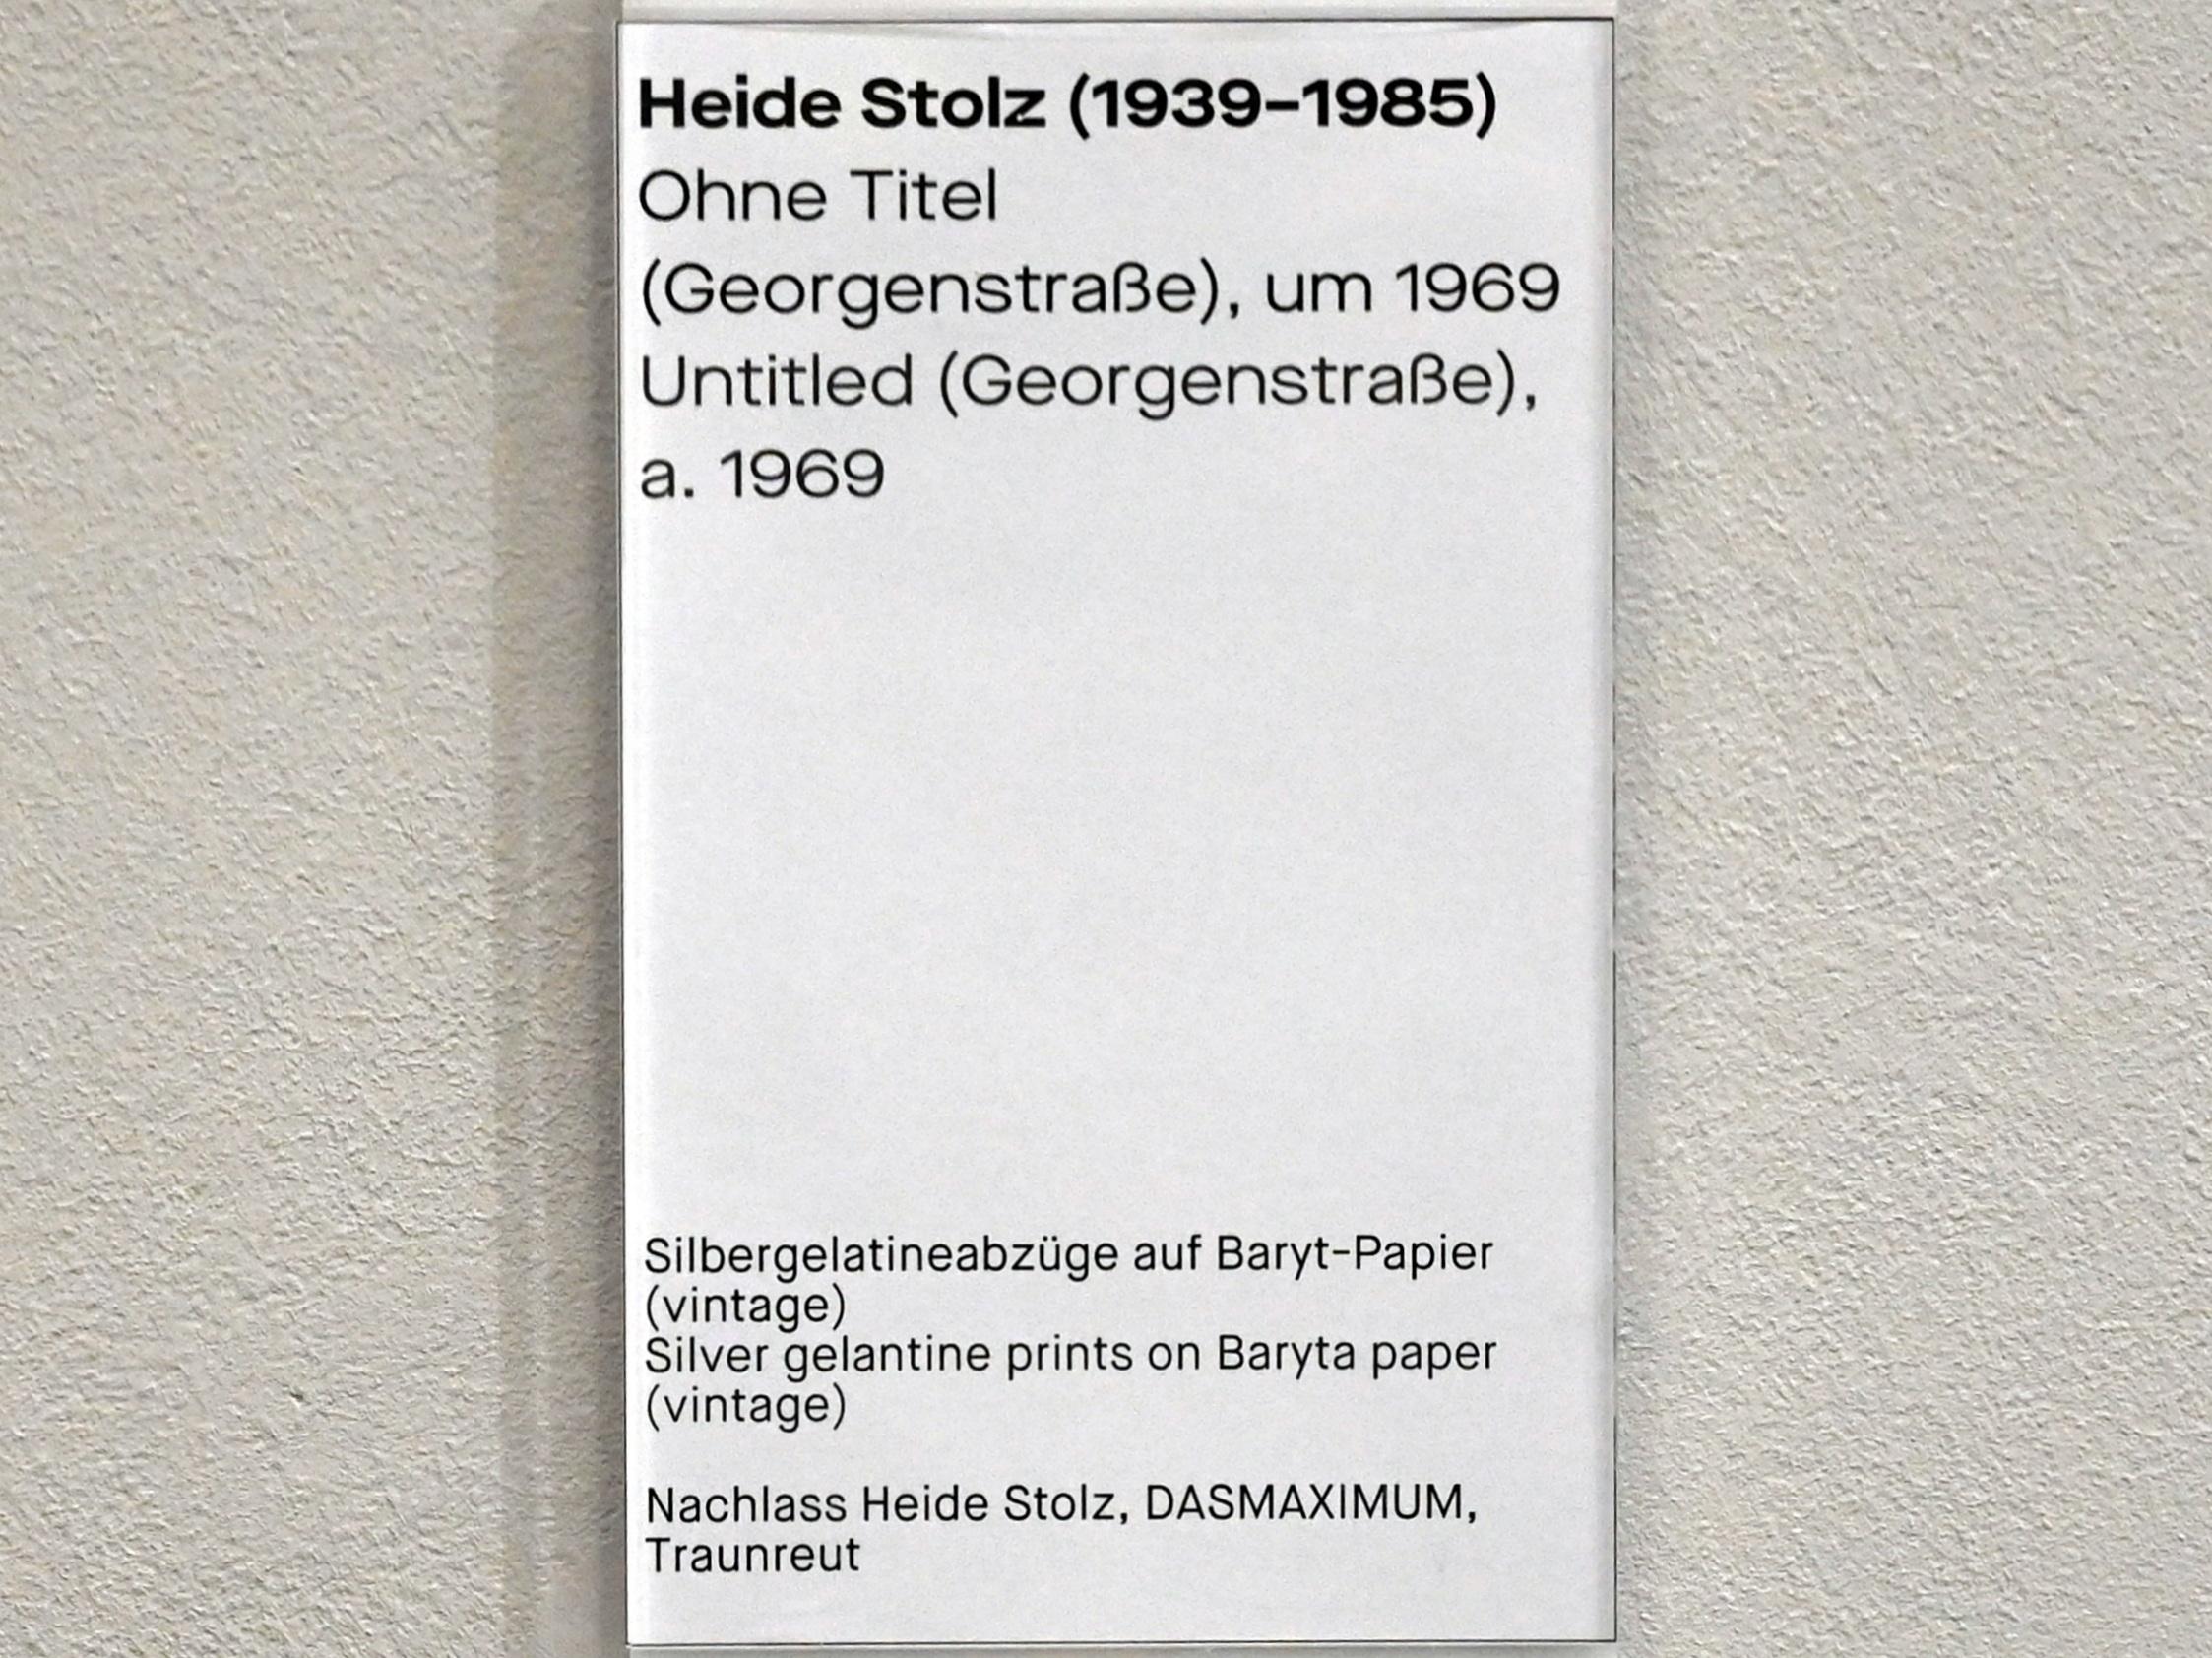 Heide Stolz (1960–1969), Ohne Titel (Georgenstraße), Chemnitz, Museum Gunzenhauser, Saal 1.8 - Uwe Lausen und Heide Stolz, um 1969, Bild 2/2